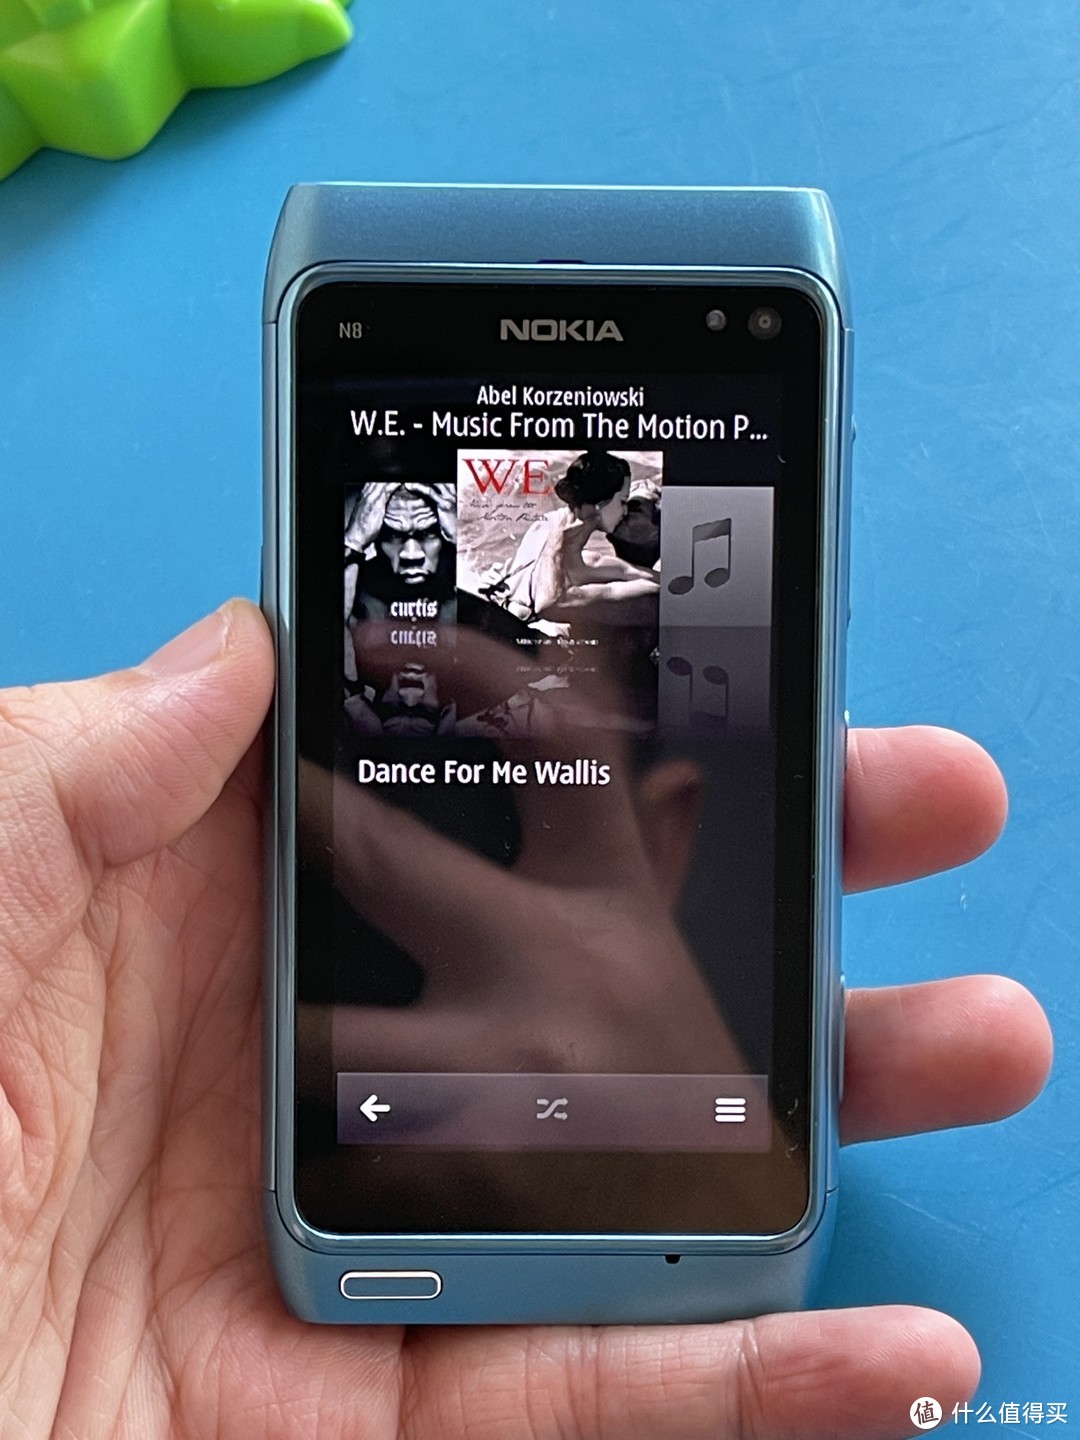 诺基亚N8的音乐播放器界面